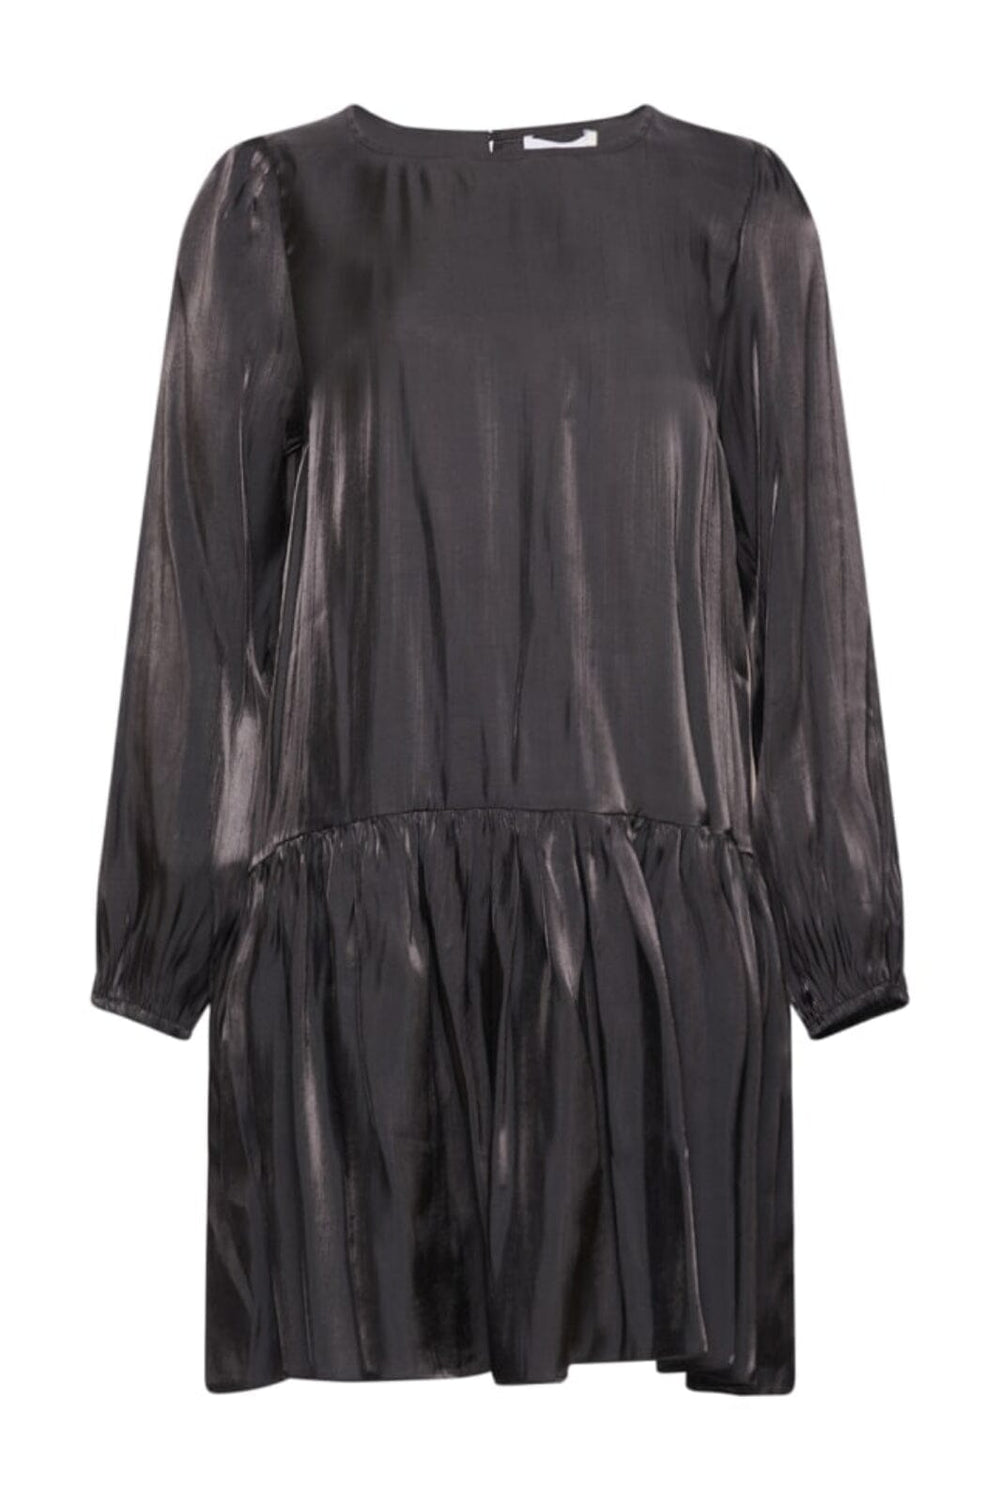 Noella - Sierra Dagmar Dress - 004 Black Kjoler 